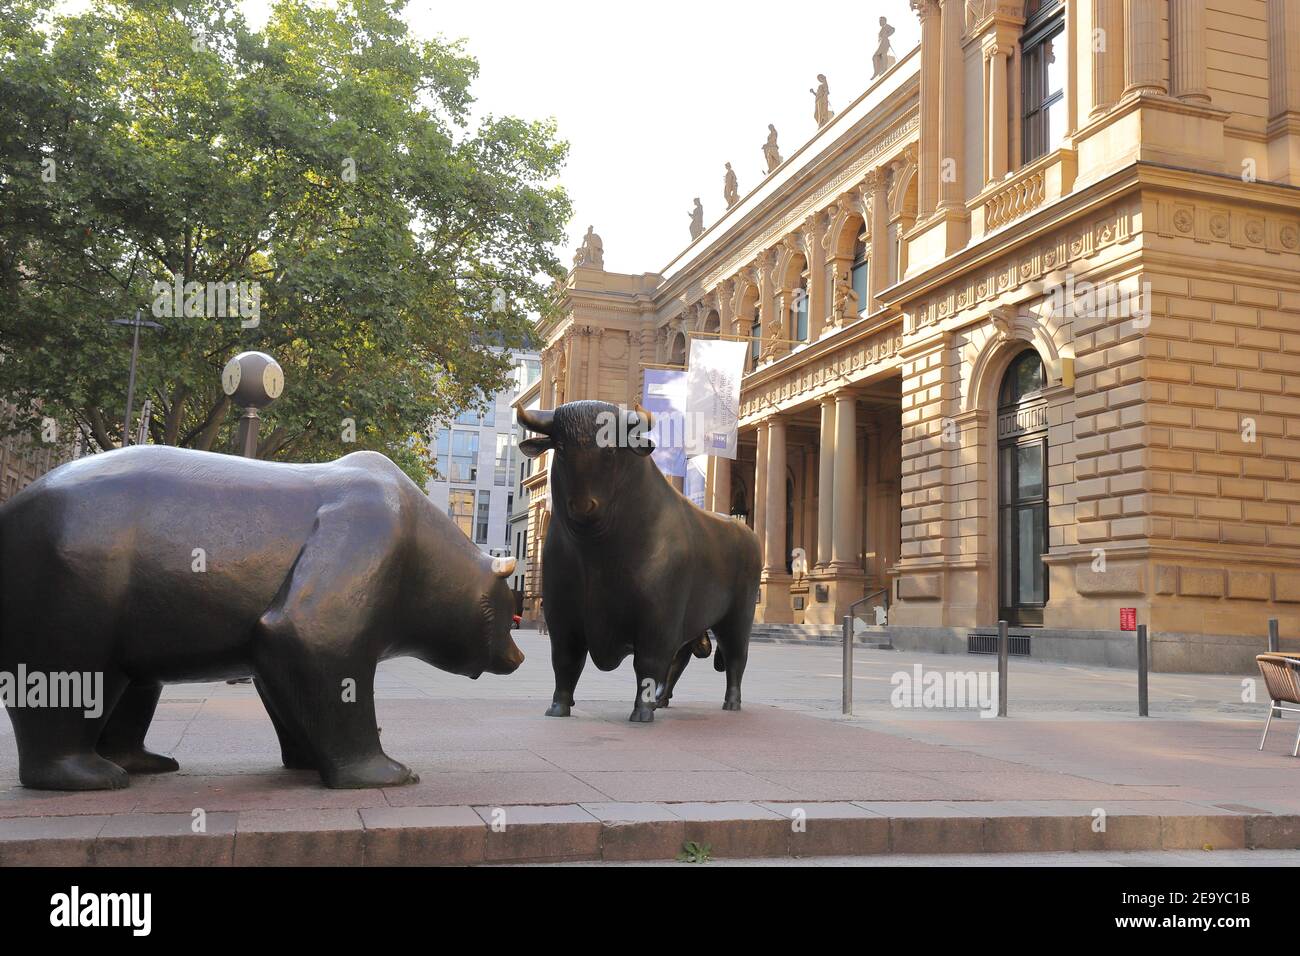 ALLEMAGNE, FRANCFORT AM MAIN - 31 AOÛT 2019 : statue de Bull and Bear devant la Bourse de Francfort Banque D'Images